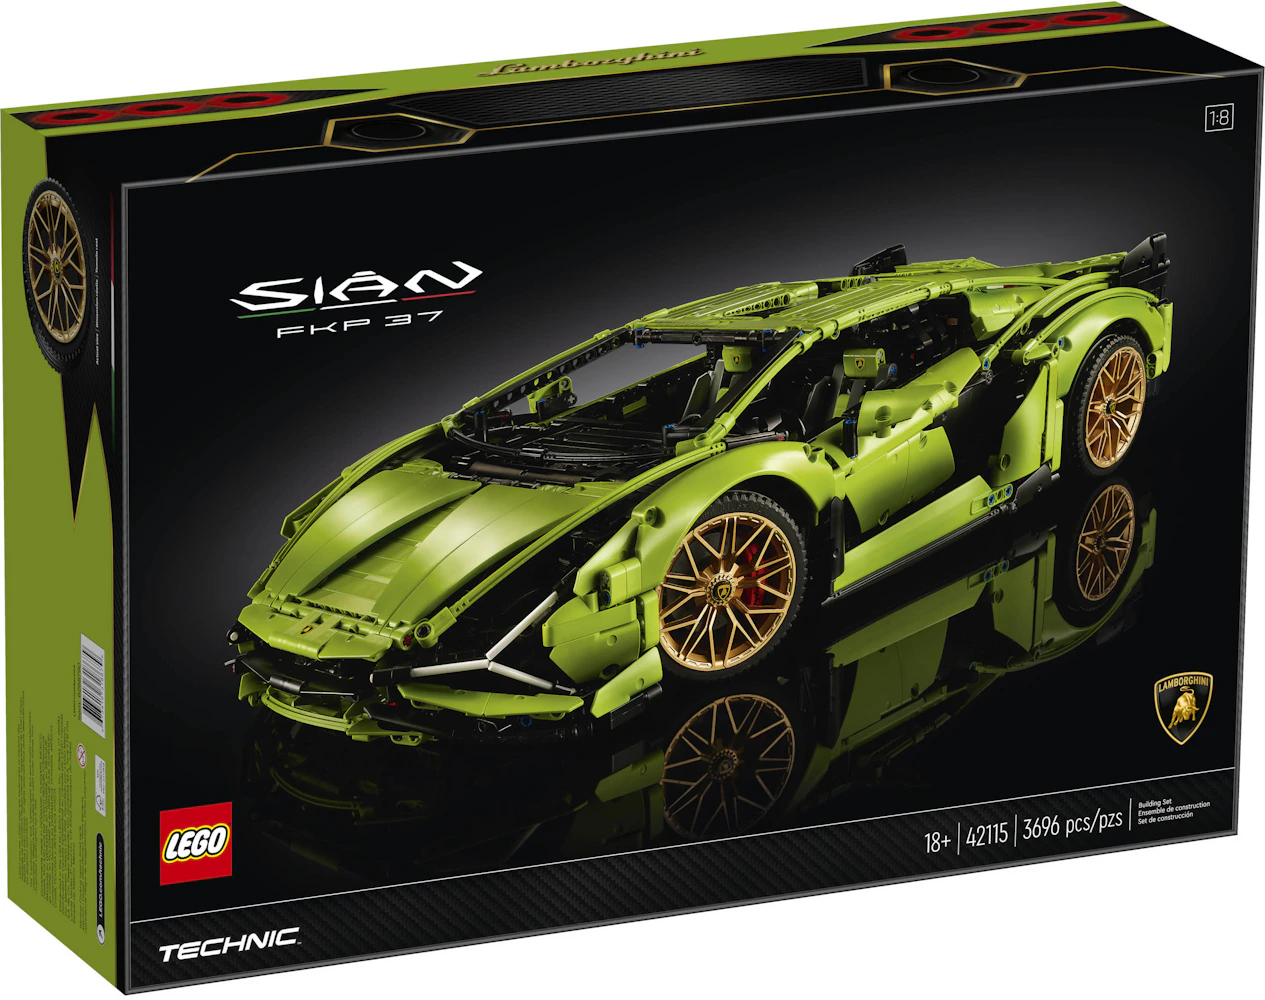 LEGO Technic Lamborghini Sian FKP 37 Set 42115 - US